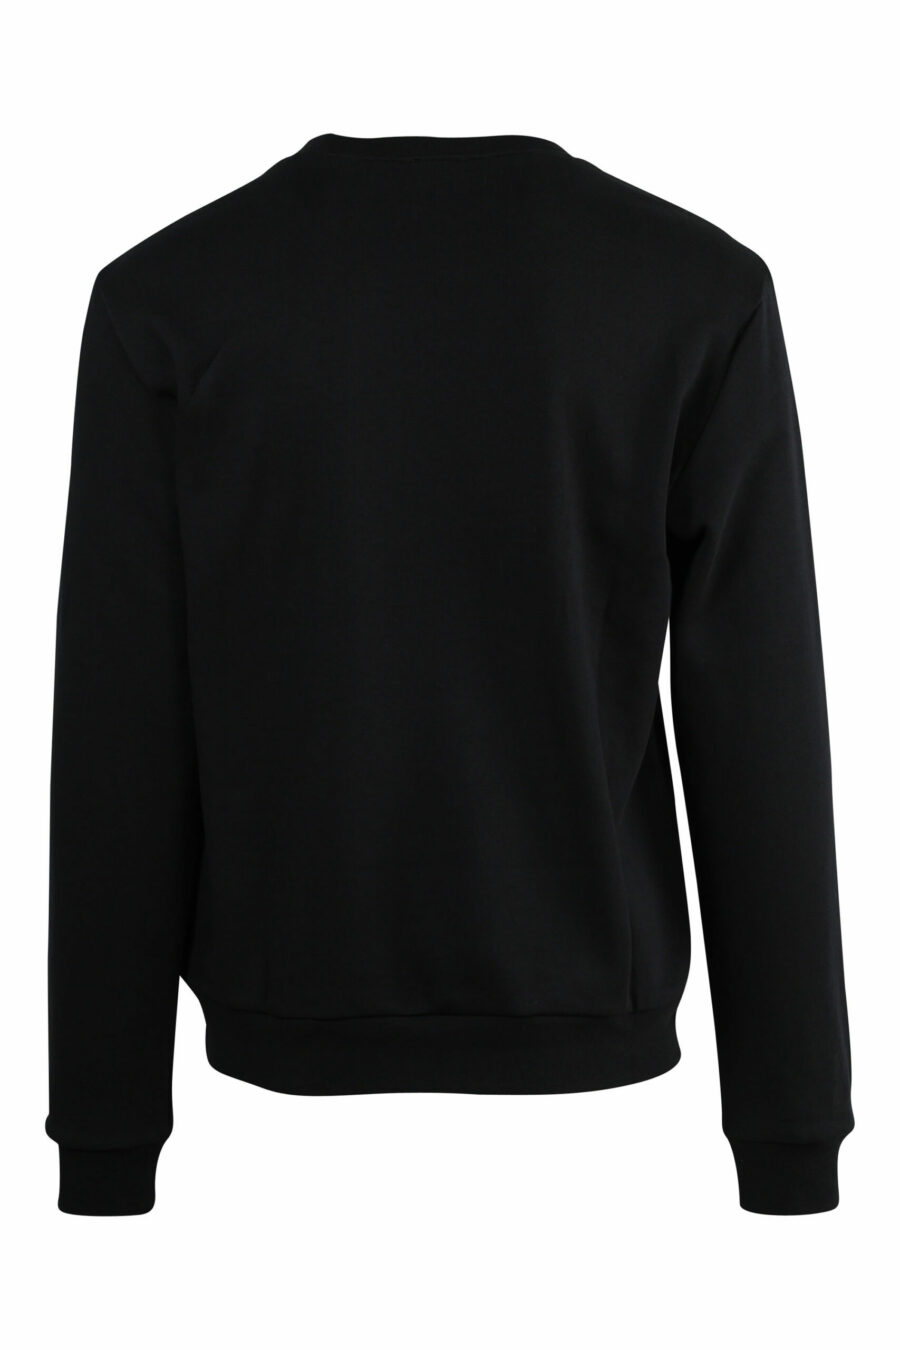 Schwarzes Sweatshirt mit weißem "lux identity" Maxilogo - 8057767667085 skaliert